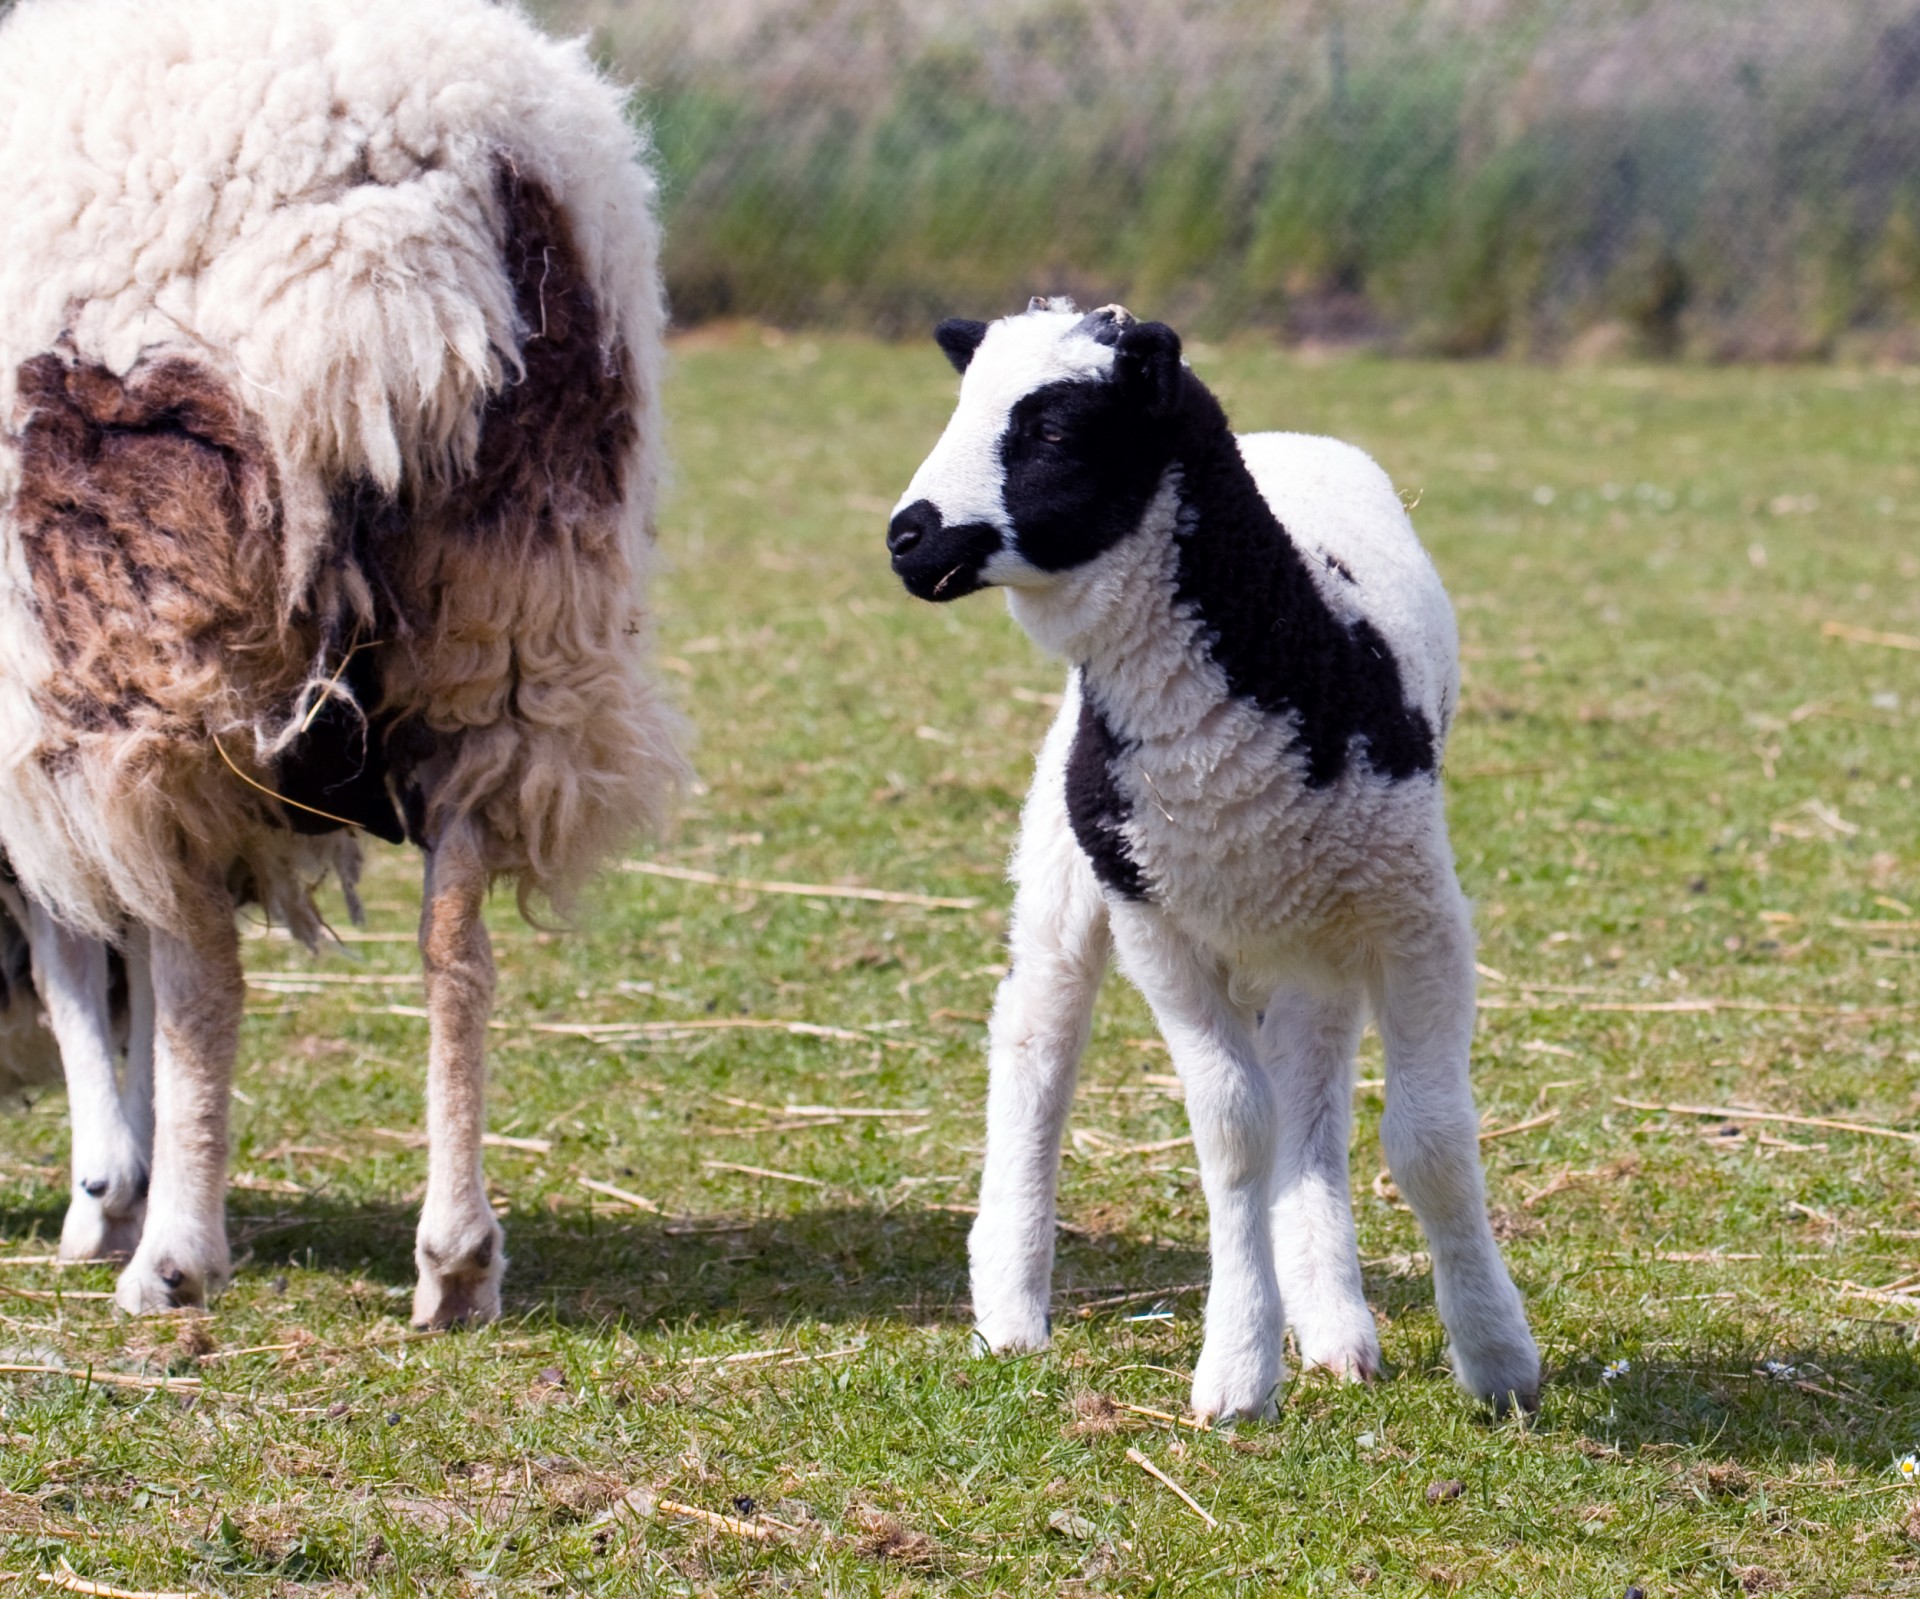 lamb baby sheep free photo